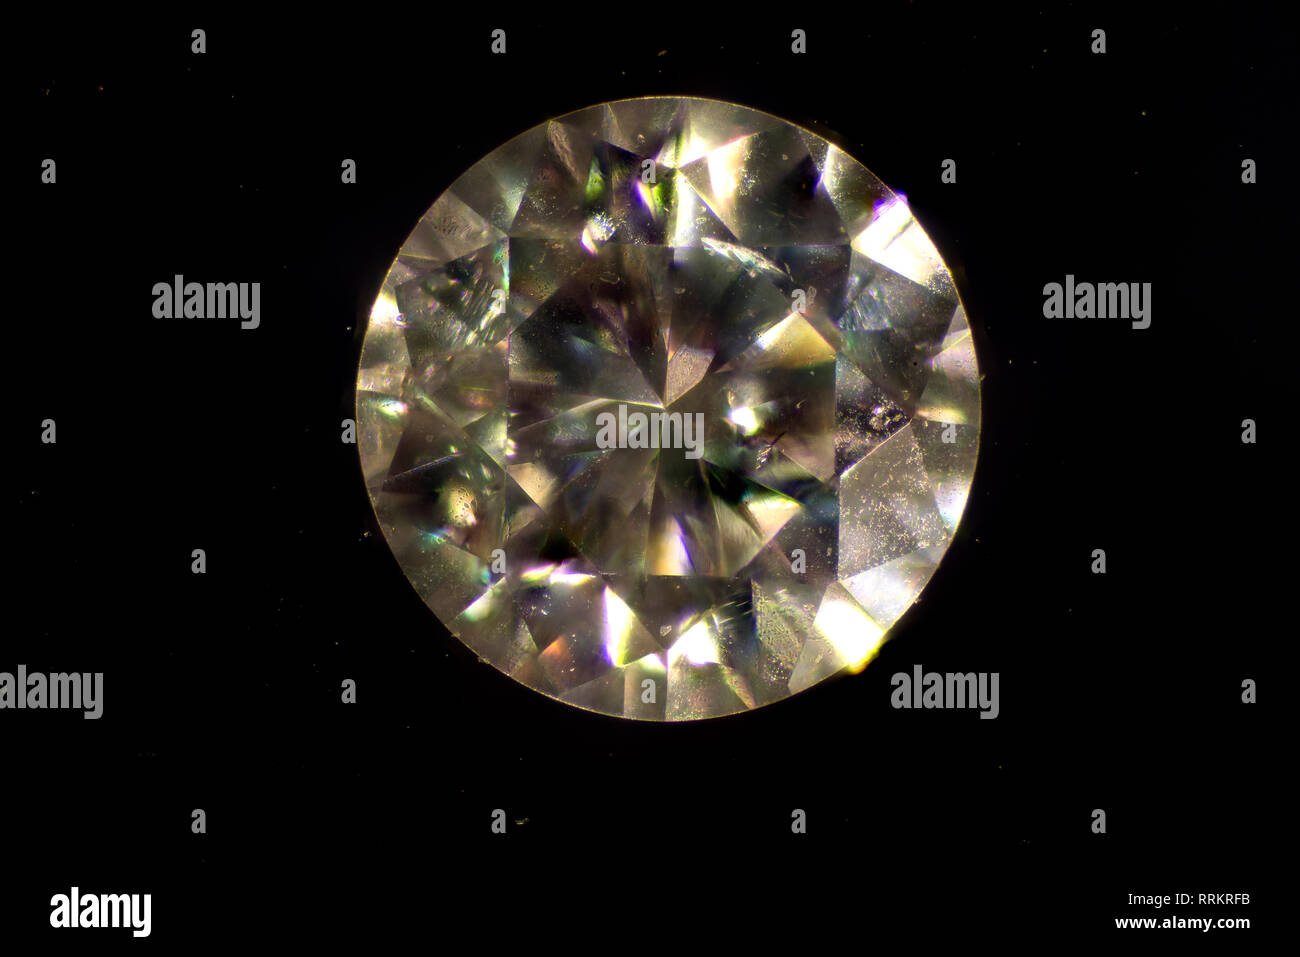 Mikroskopische Bild. Diamond ist eine feste Form des Elements Kohlenstoff mit seine Atome in einem Kristall Struktur angeordnet namens Diamond cubic. Stockfoto